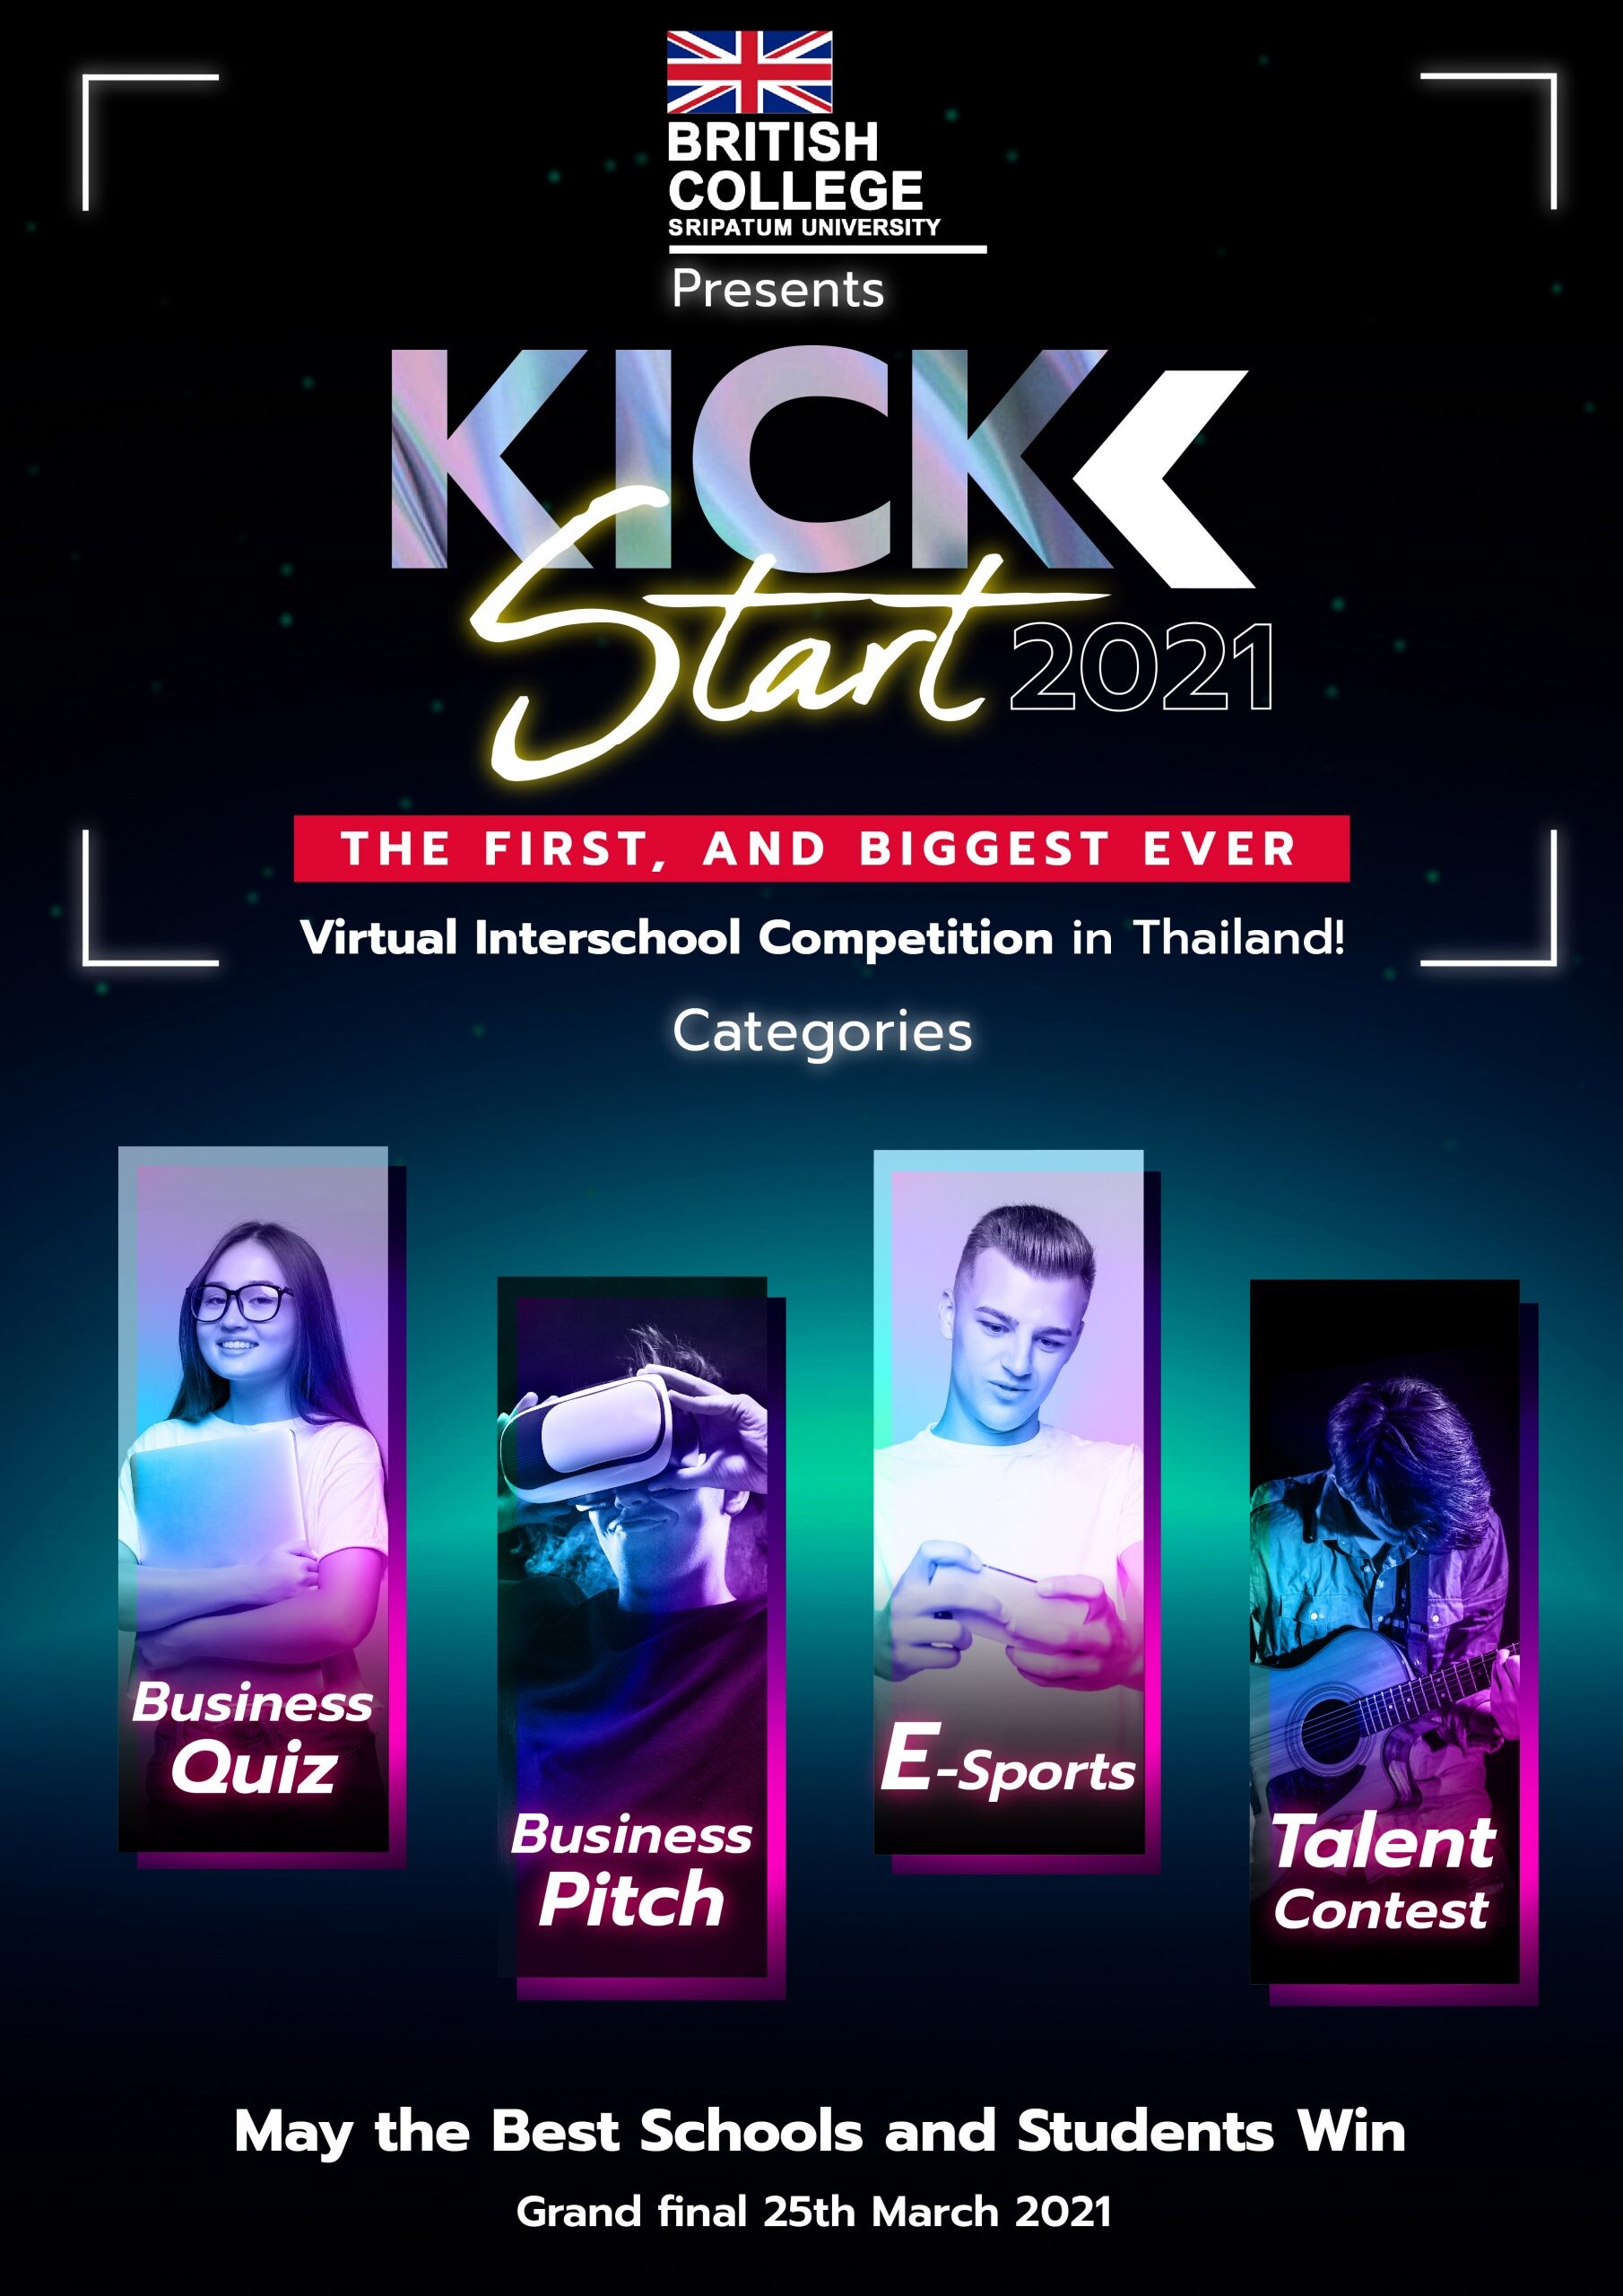 ขอเชิญชวนน้องๆนักเรียนระดับมัธยมศึกษาตอนปลาย เข้าร่วมแข่งขันกิจกรรม British KickStart 2021 จัดขึ้นโดย British college โดยมหาวิทยาลัยศรีปทุม (บางเขน)